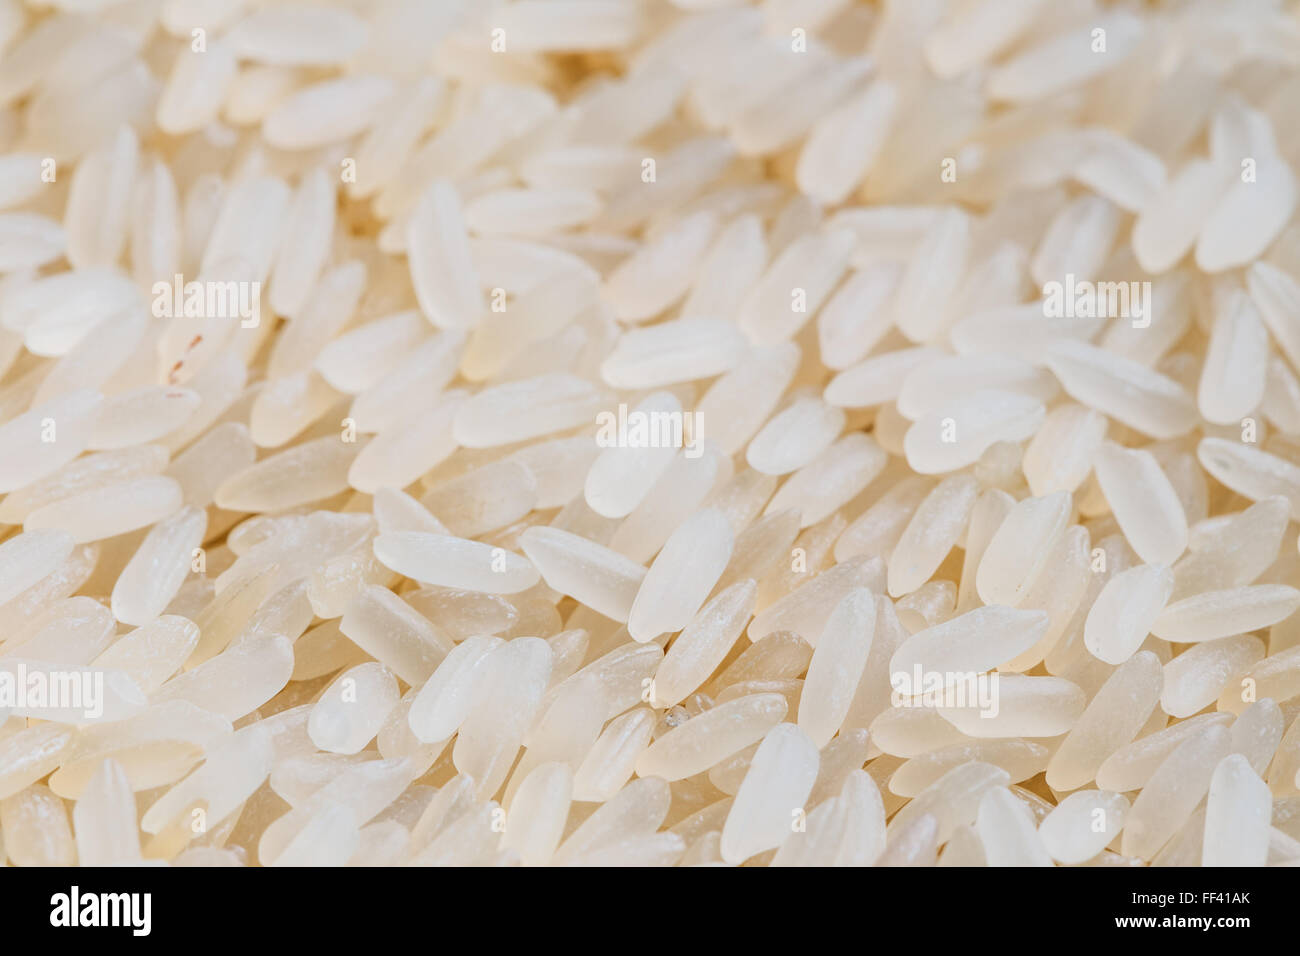 Weiße lange Reis Hintergrund, ungekocht rohes Getreide, Makro Nahaufnahme Detail Textur Stockfoto